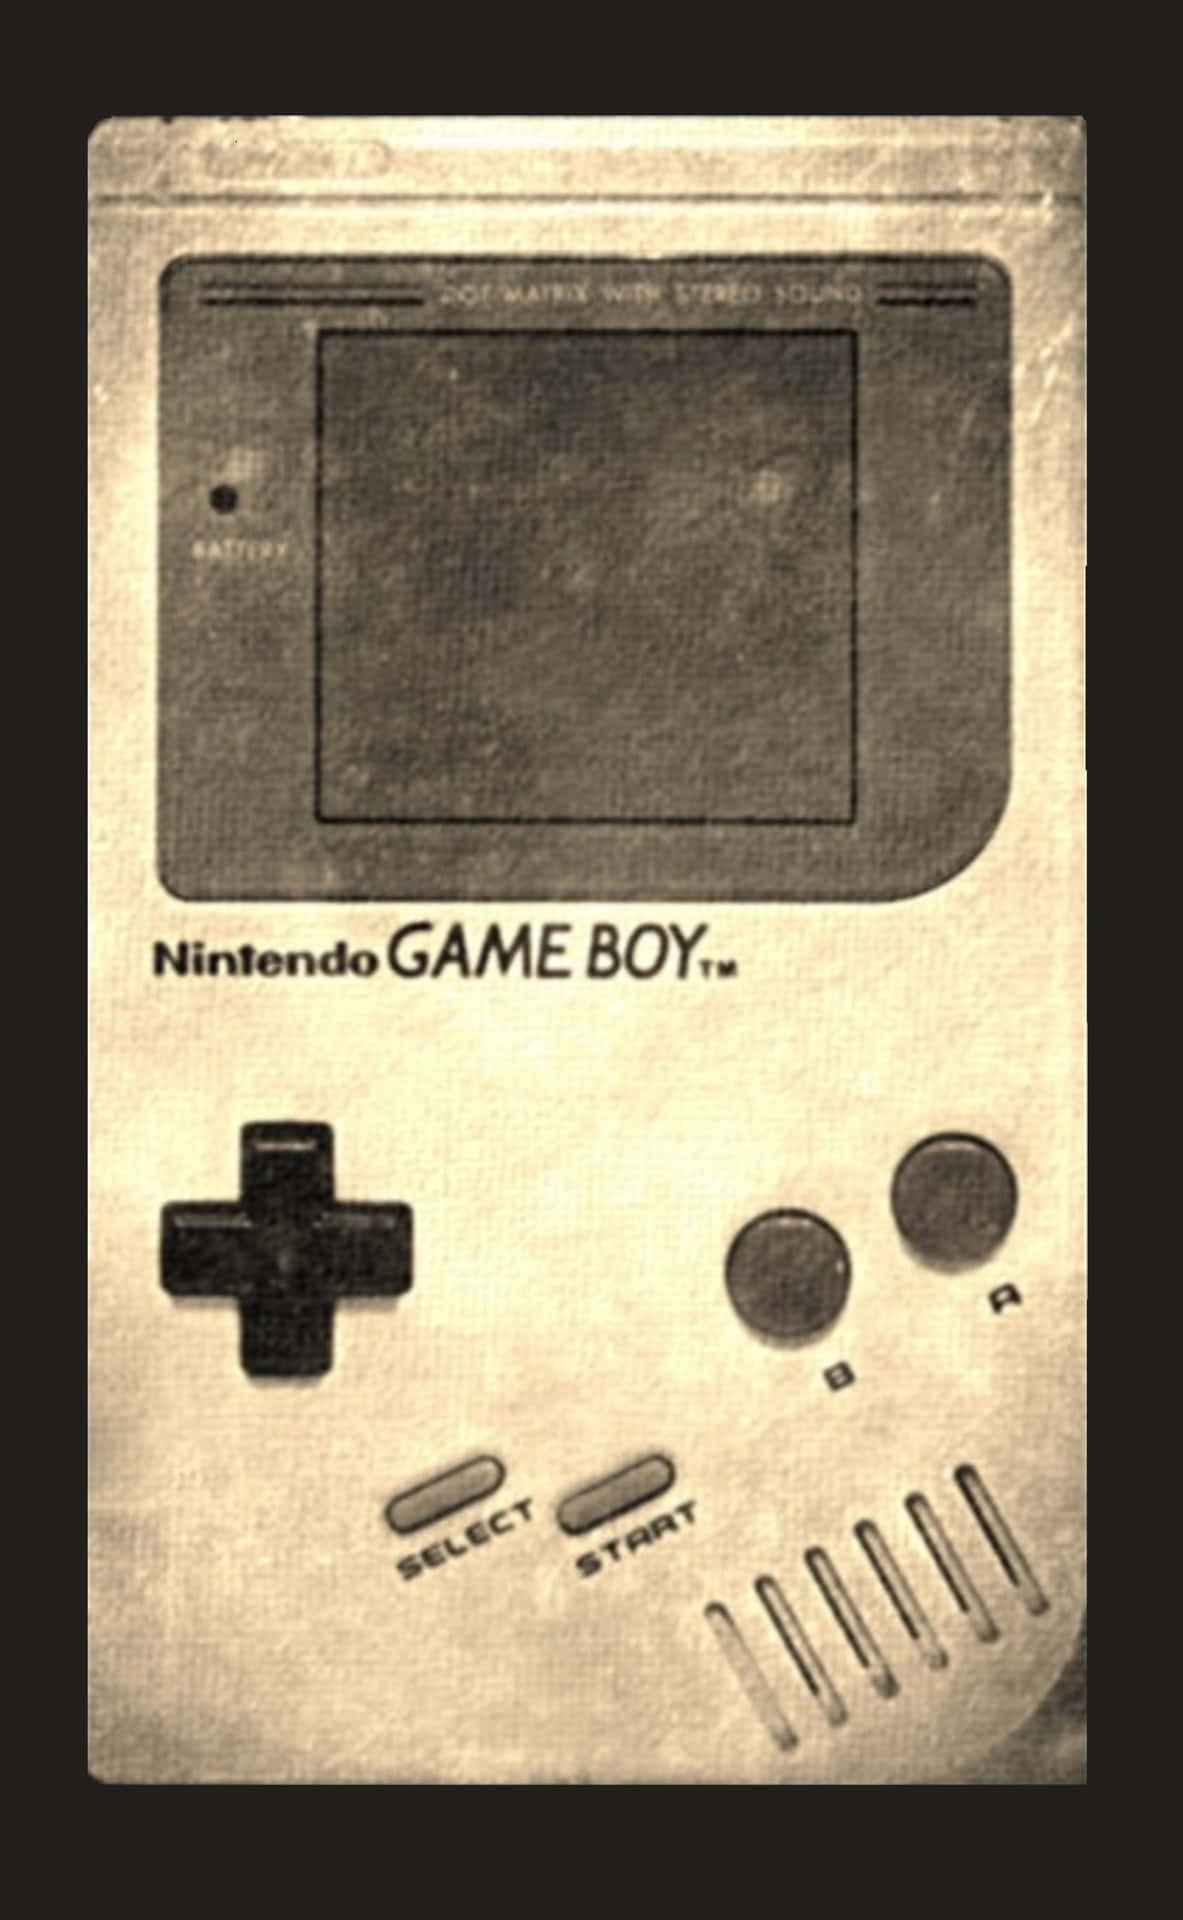 Retrospelsmotivfrån Nintendo - Vintage. Wallpaper